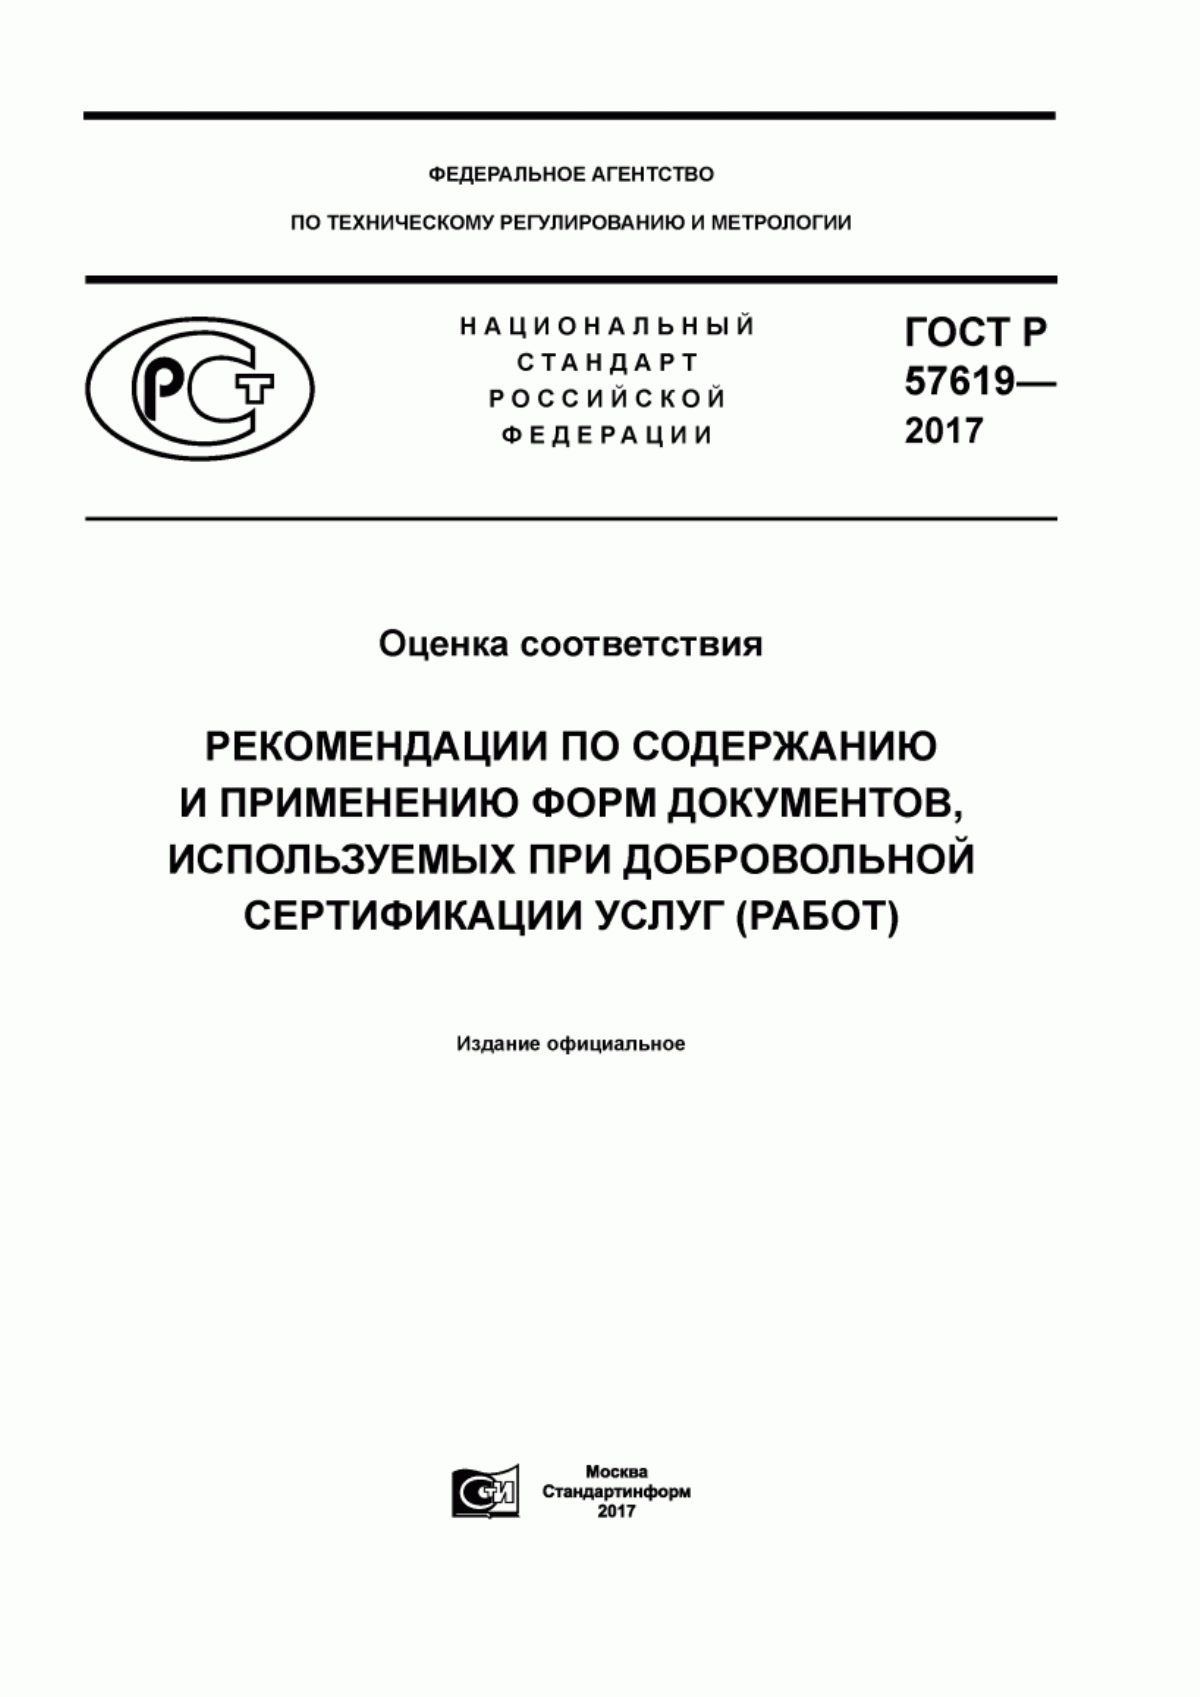 ГОСТ Р 57619-2017 Оценка соответствия. Рекомендации по содержанию и применению форм документов, используемых при добровольной сертификации услуг (работ)